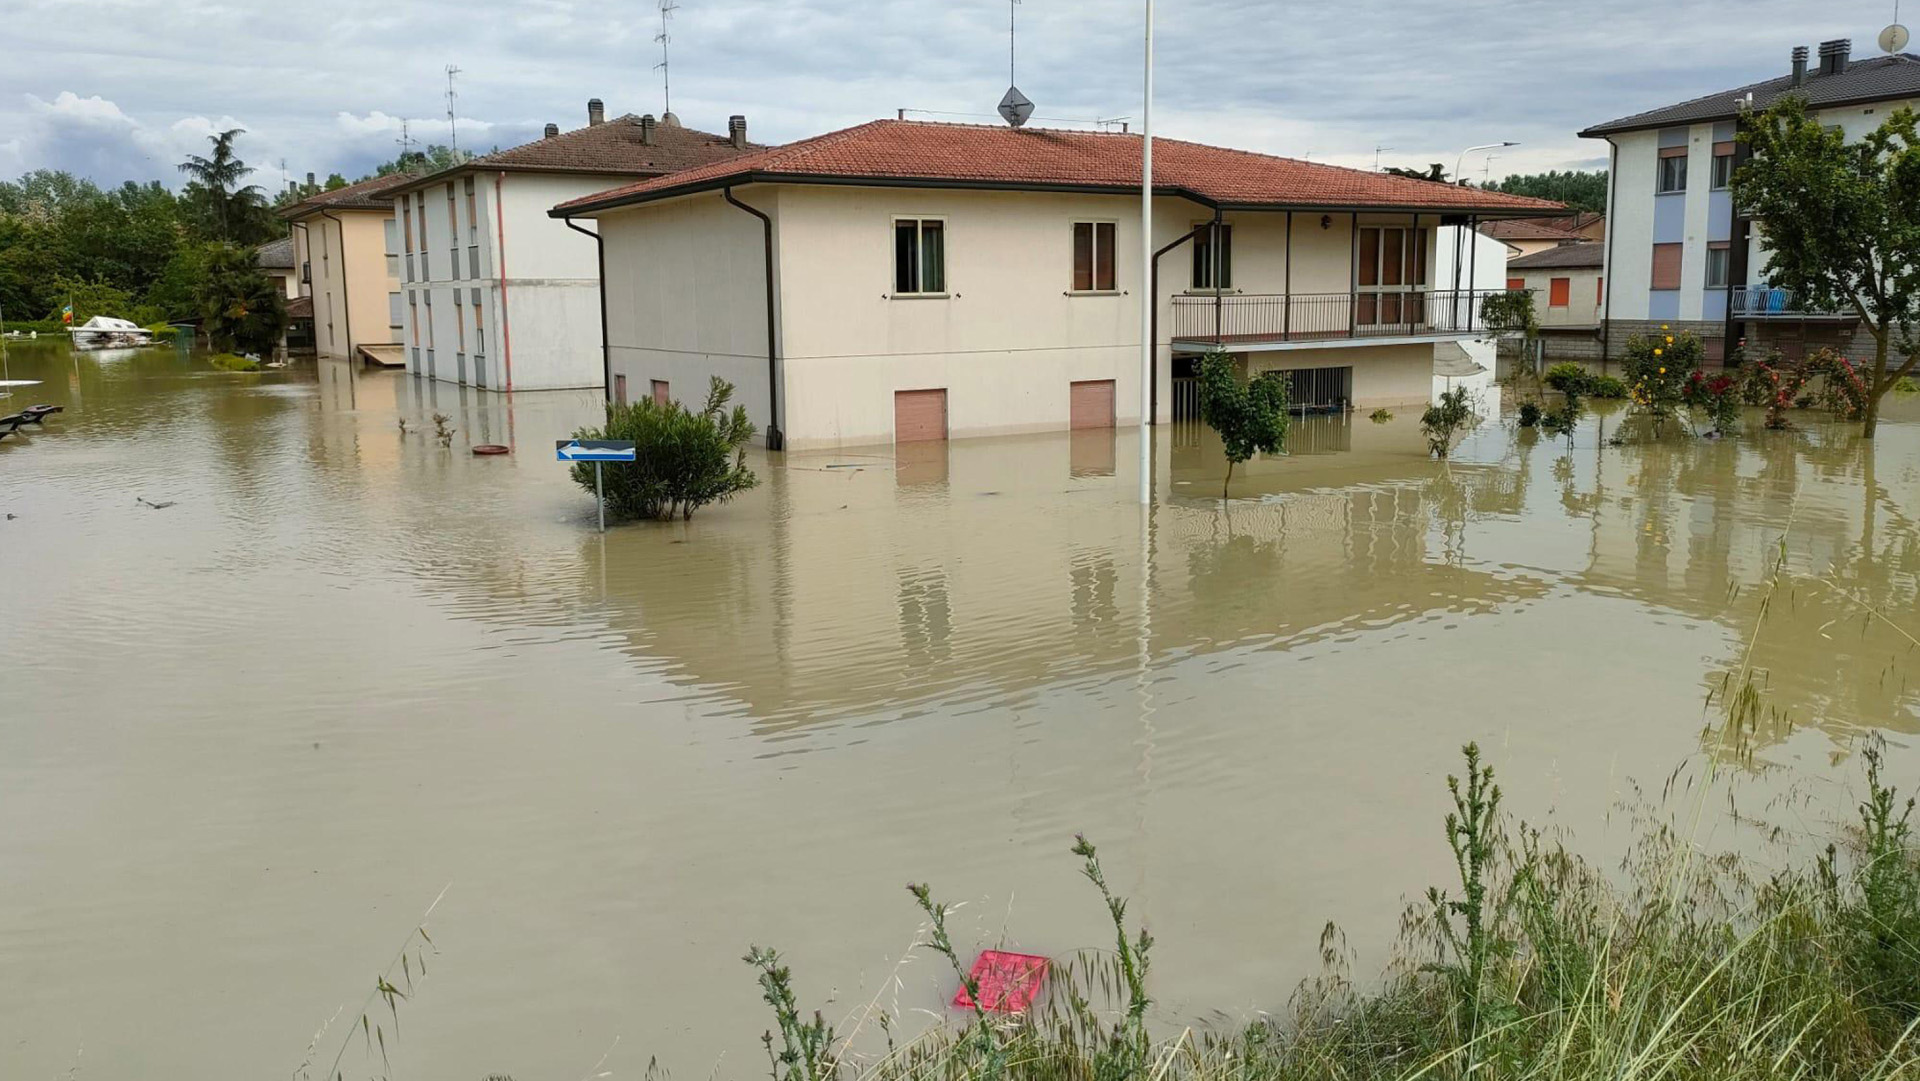 A violenta tempestade na Emilia-Romagna, hipóteses sobre o suposto ataque ao Kremlin e outras notícias do dia